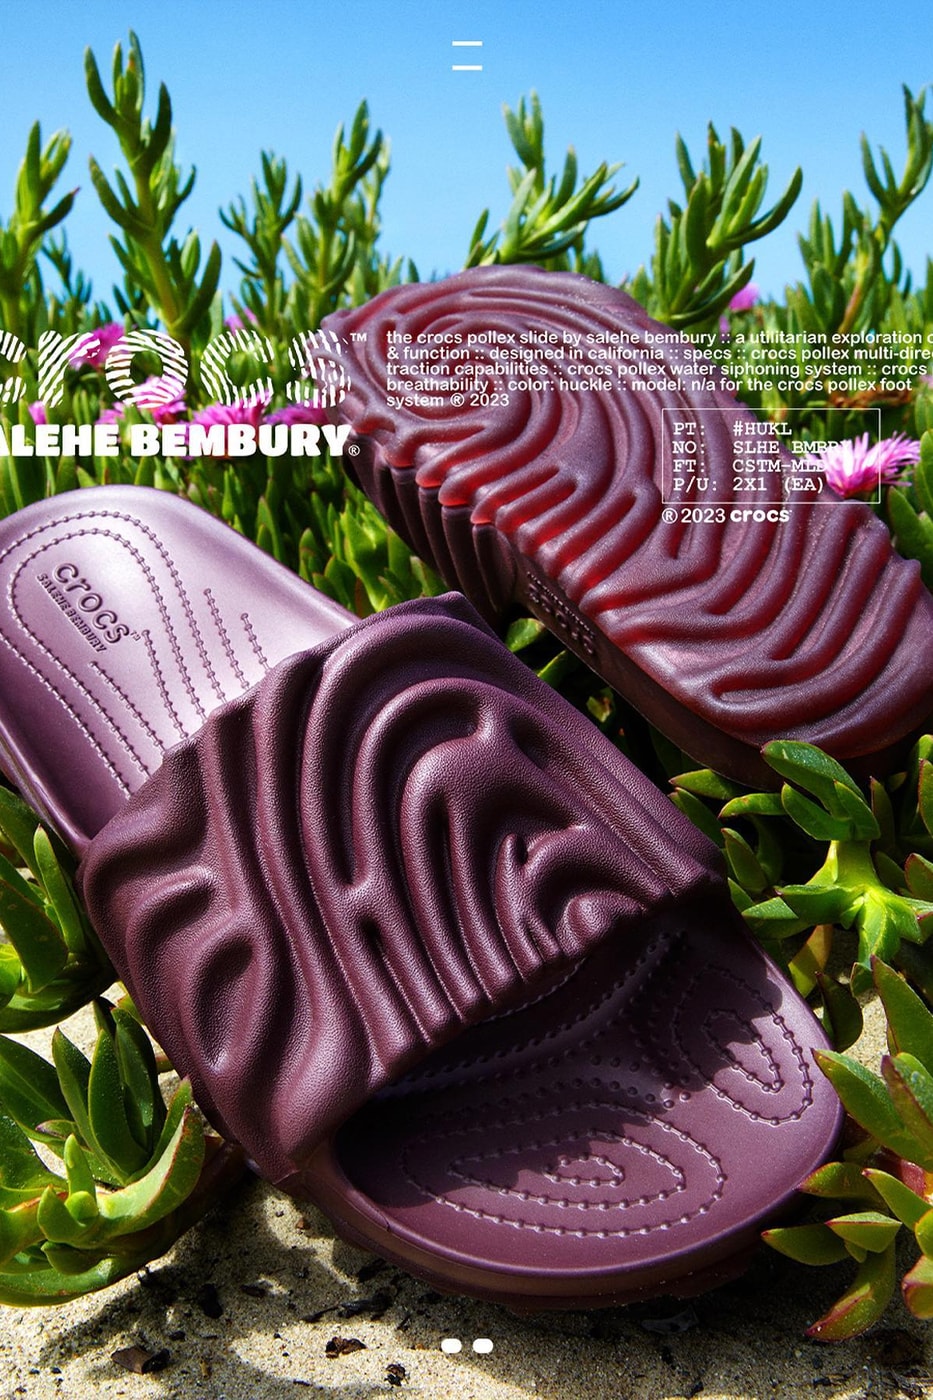 Release Info for Salehe Bembury's Crocs Pollex Slides "Huckle" beaspunge spunge sandals clogs